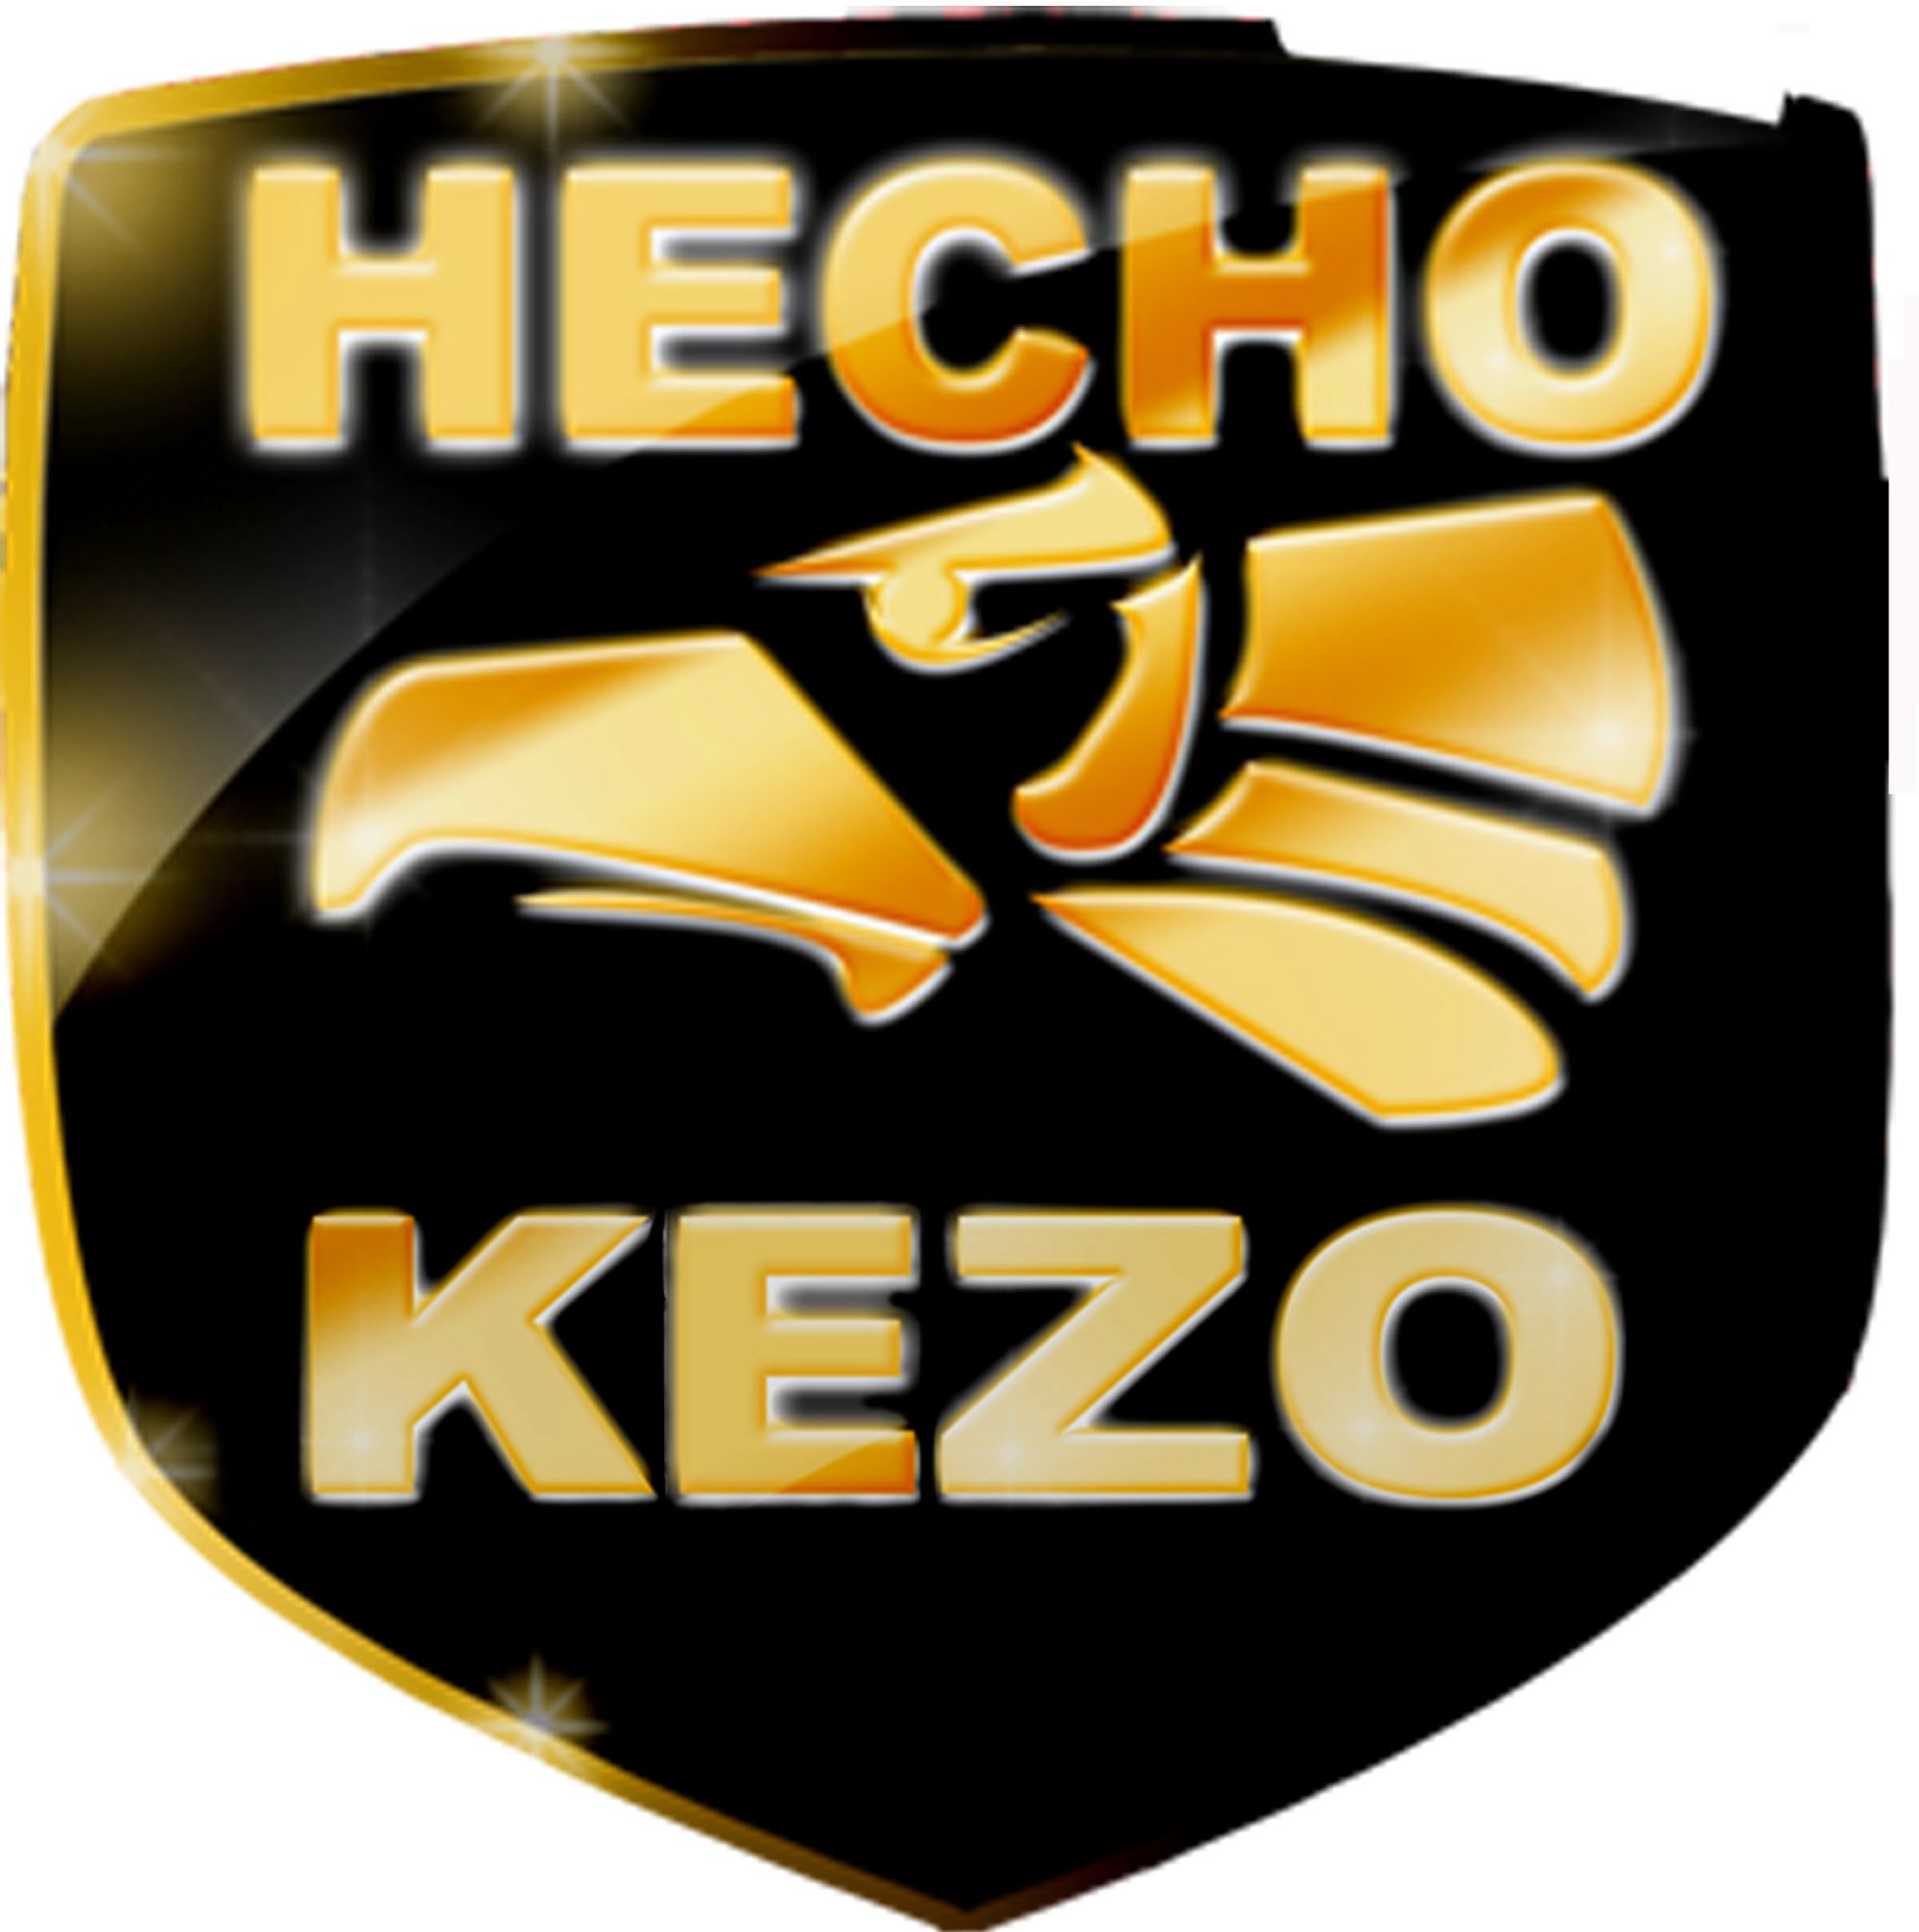  HECHO KEZO